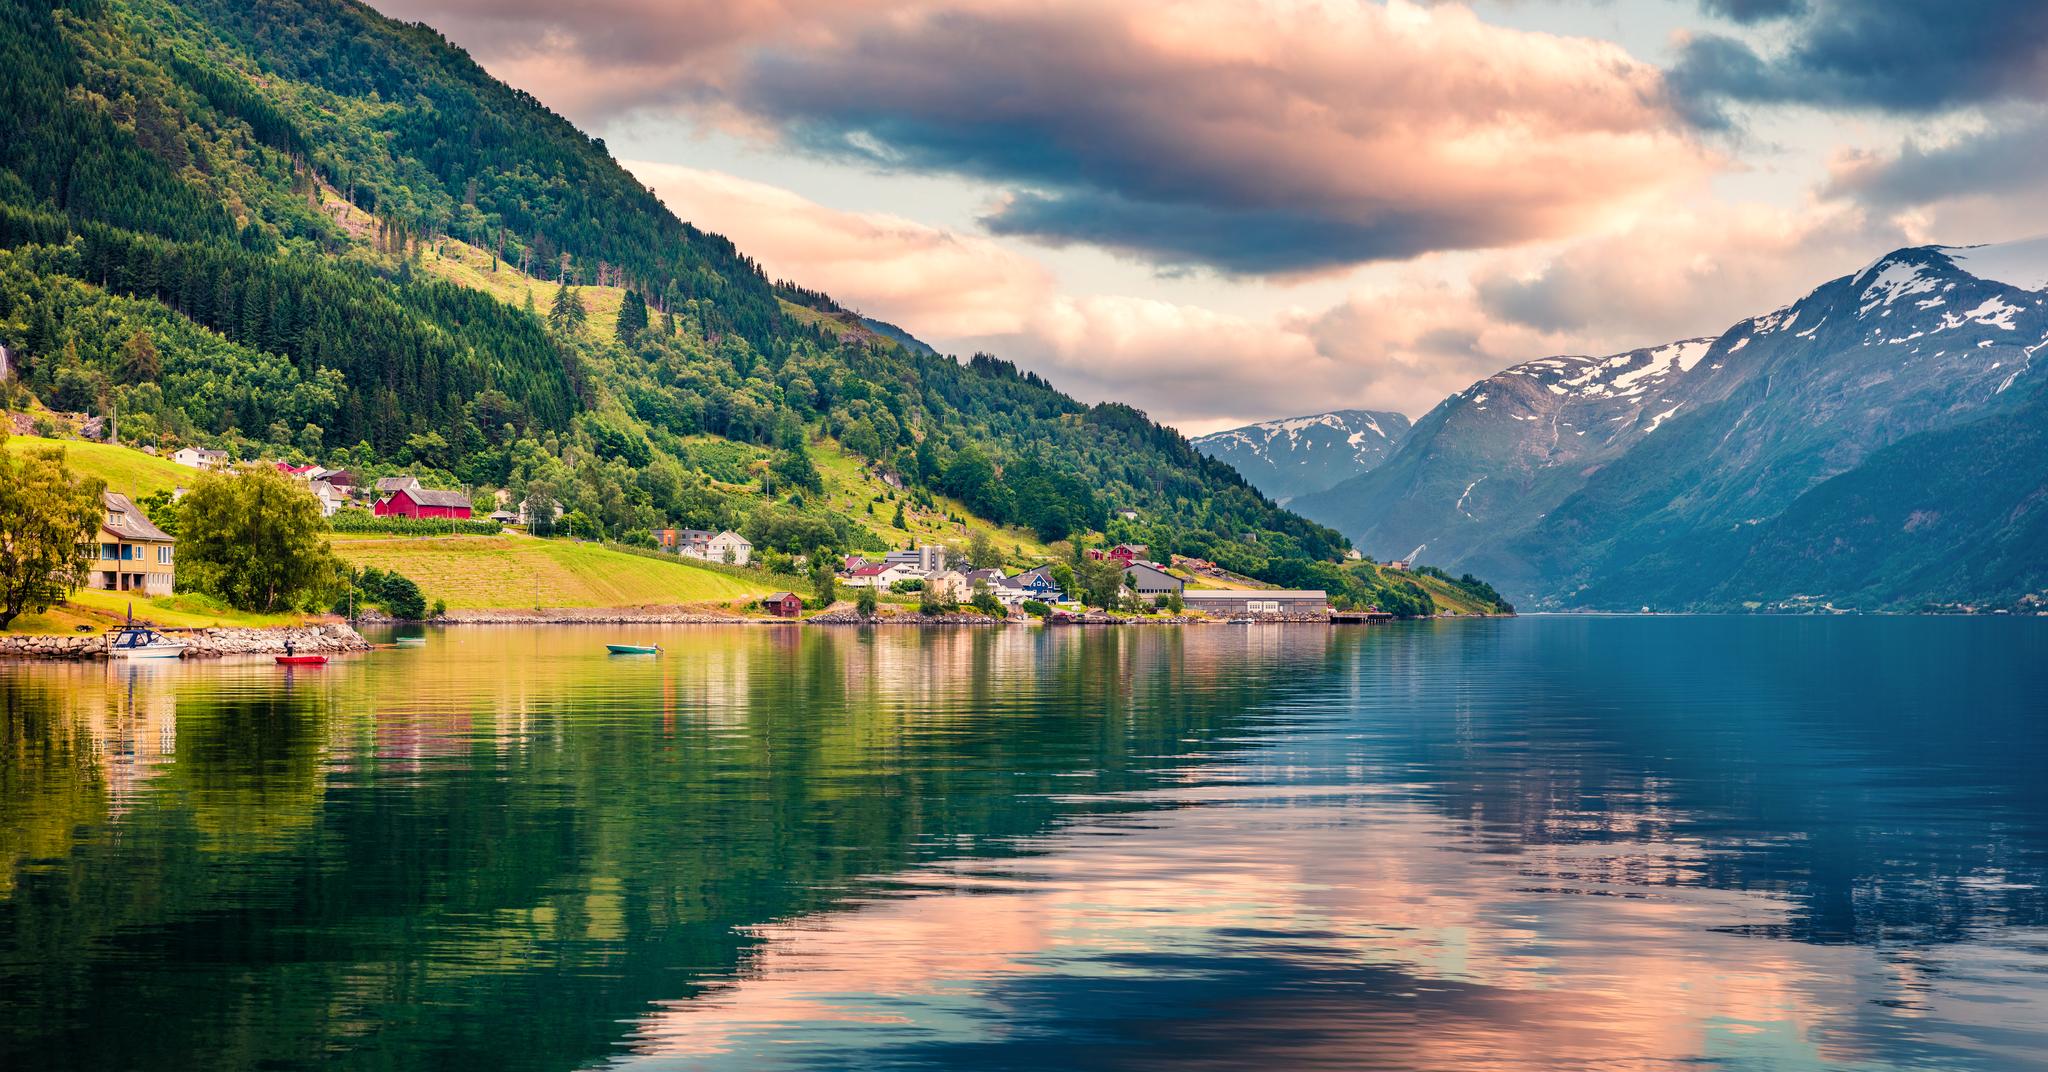 Hardanger har tradisjonelt vært et yndet reisemål for turister fra inn- og utland. Vestland blir årets feriefavoritt. 